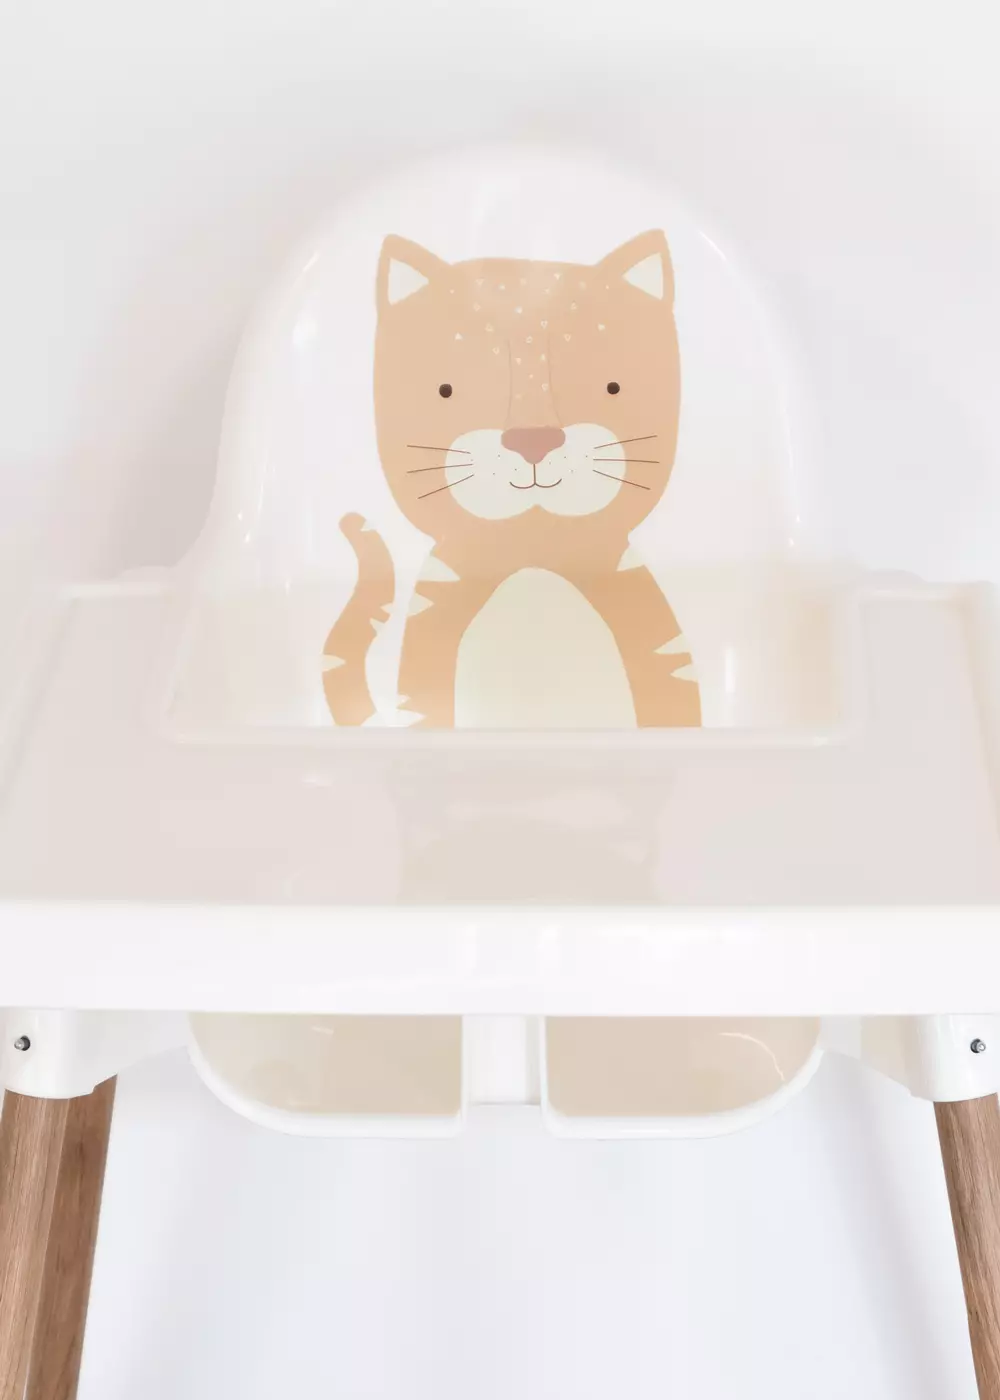 Film adhésif pour chaise haute IKEA ANTILOP motif animal chat autocollant Accessoires Ikea